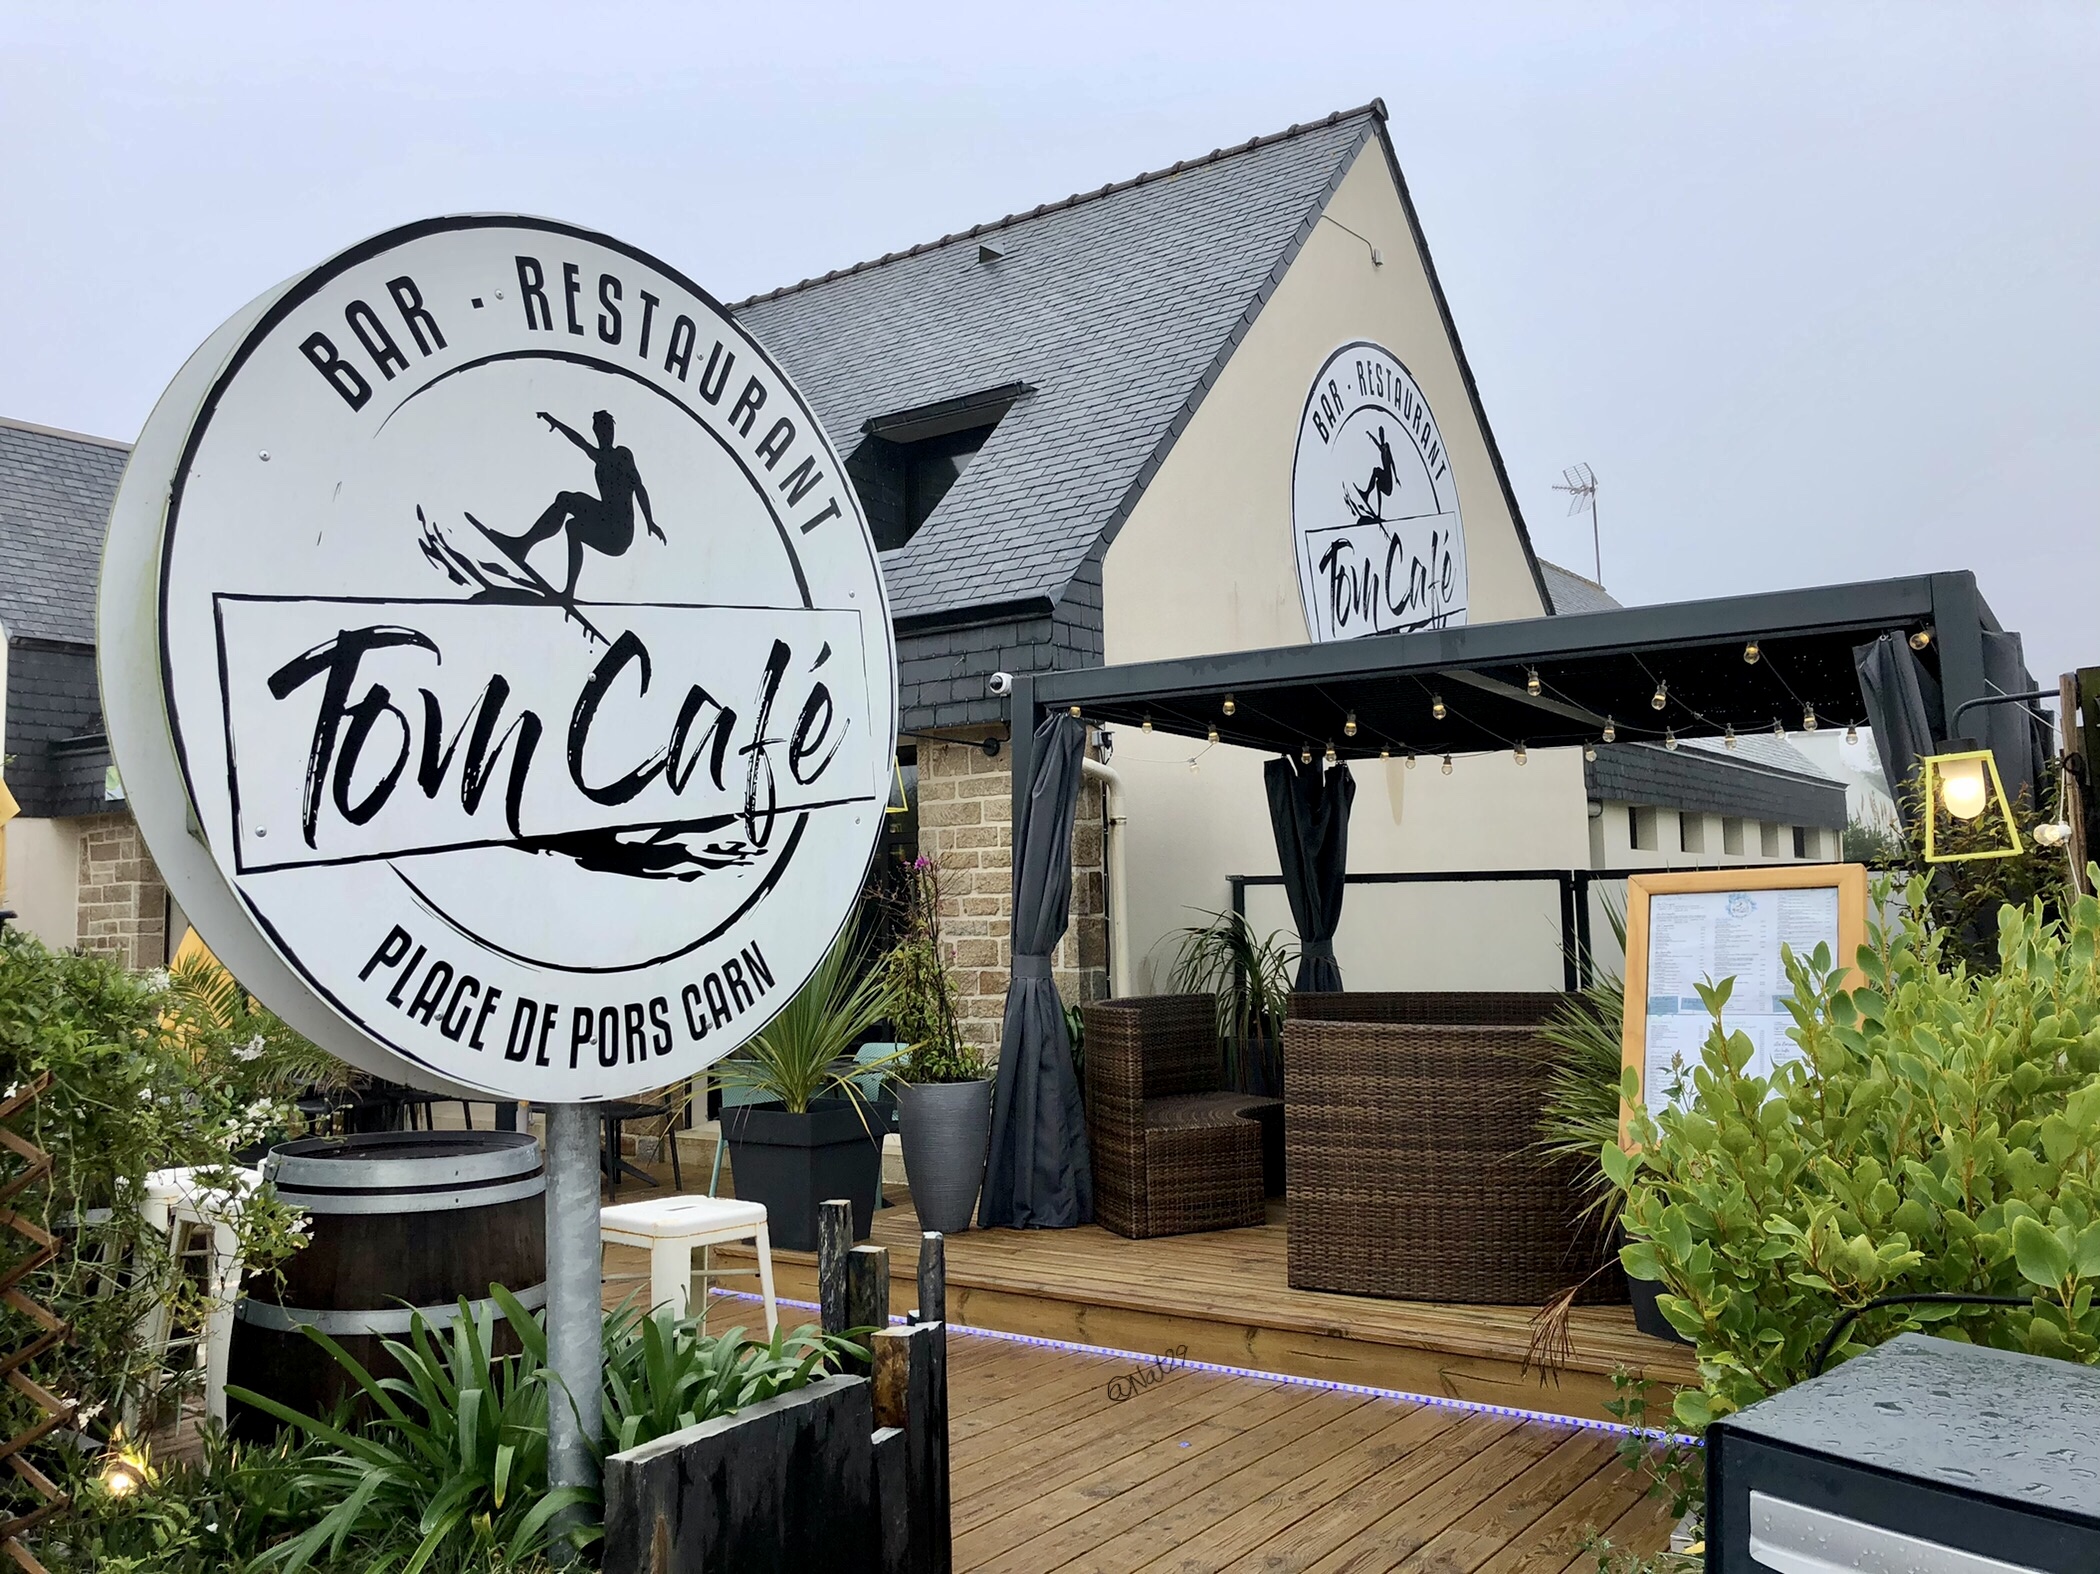 Entrée Tom Café